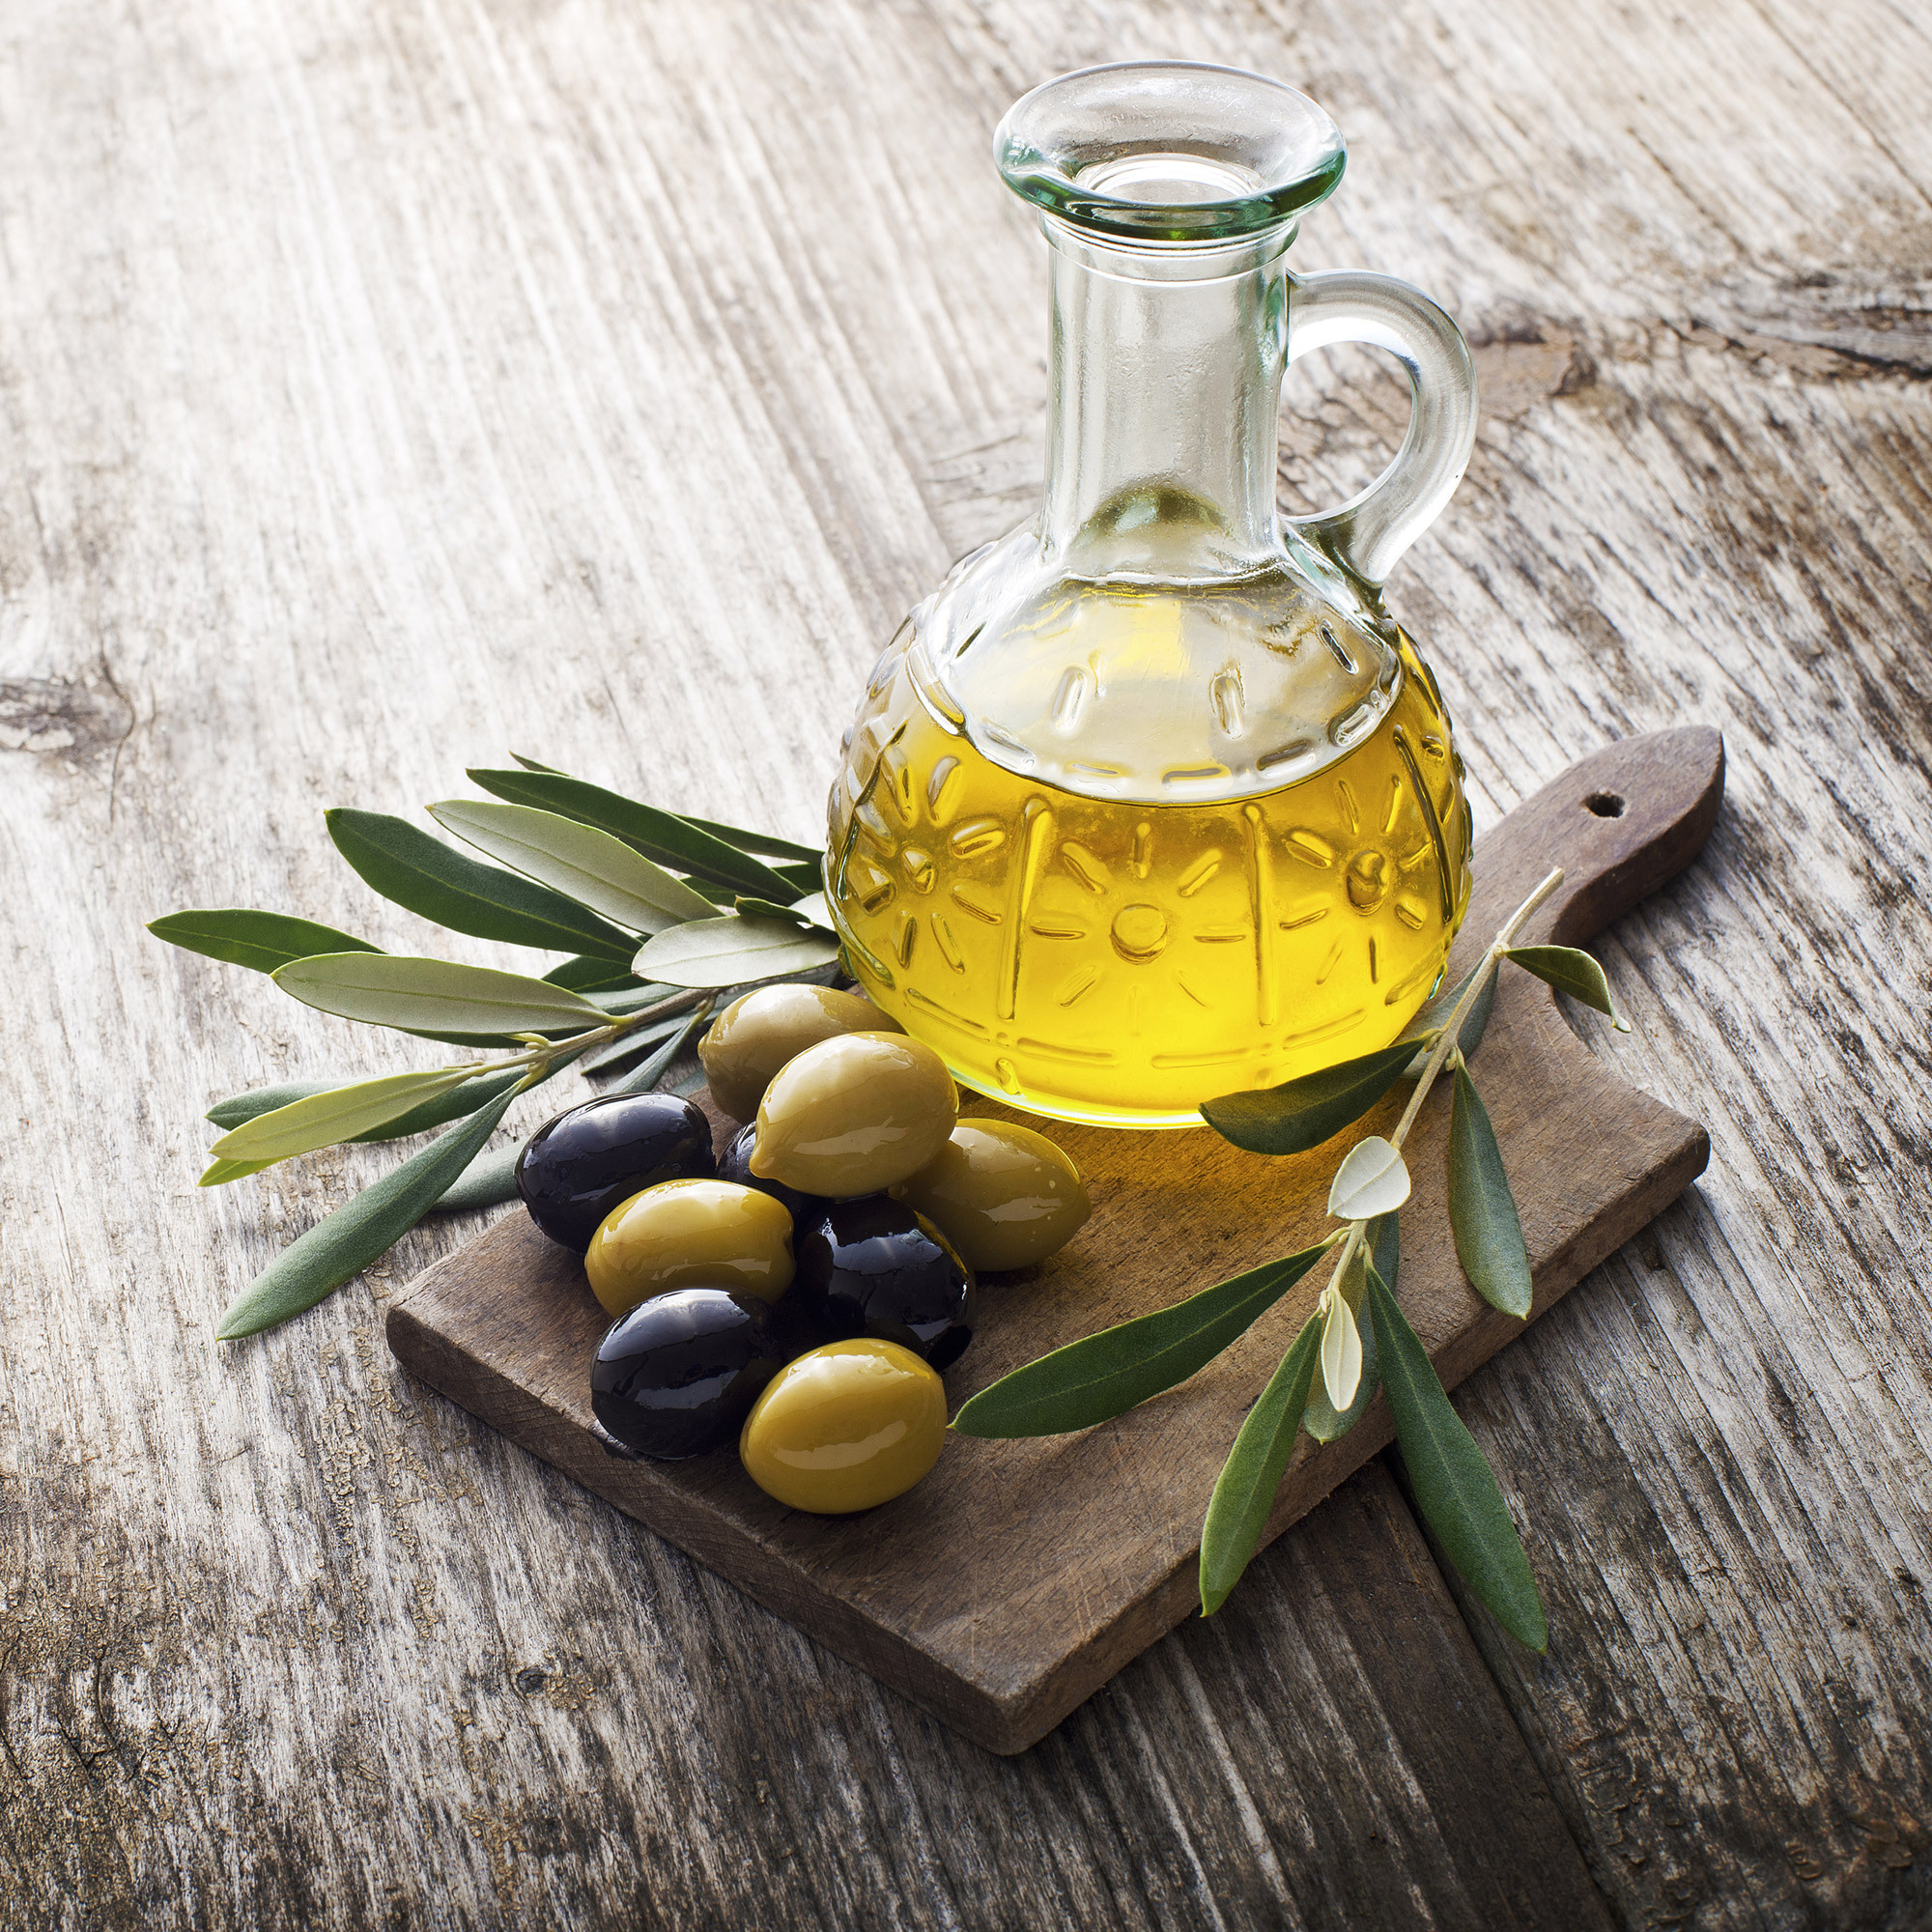 Olive Oil масло оливковое. Olive Olive для масла. Оливки и оливковое масло. Масло оливковое в графине. Оливковое масло в пищу